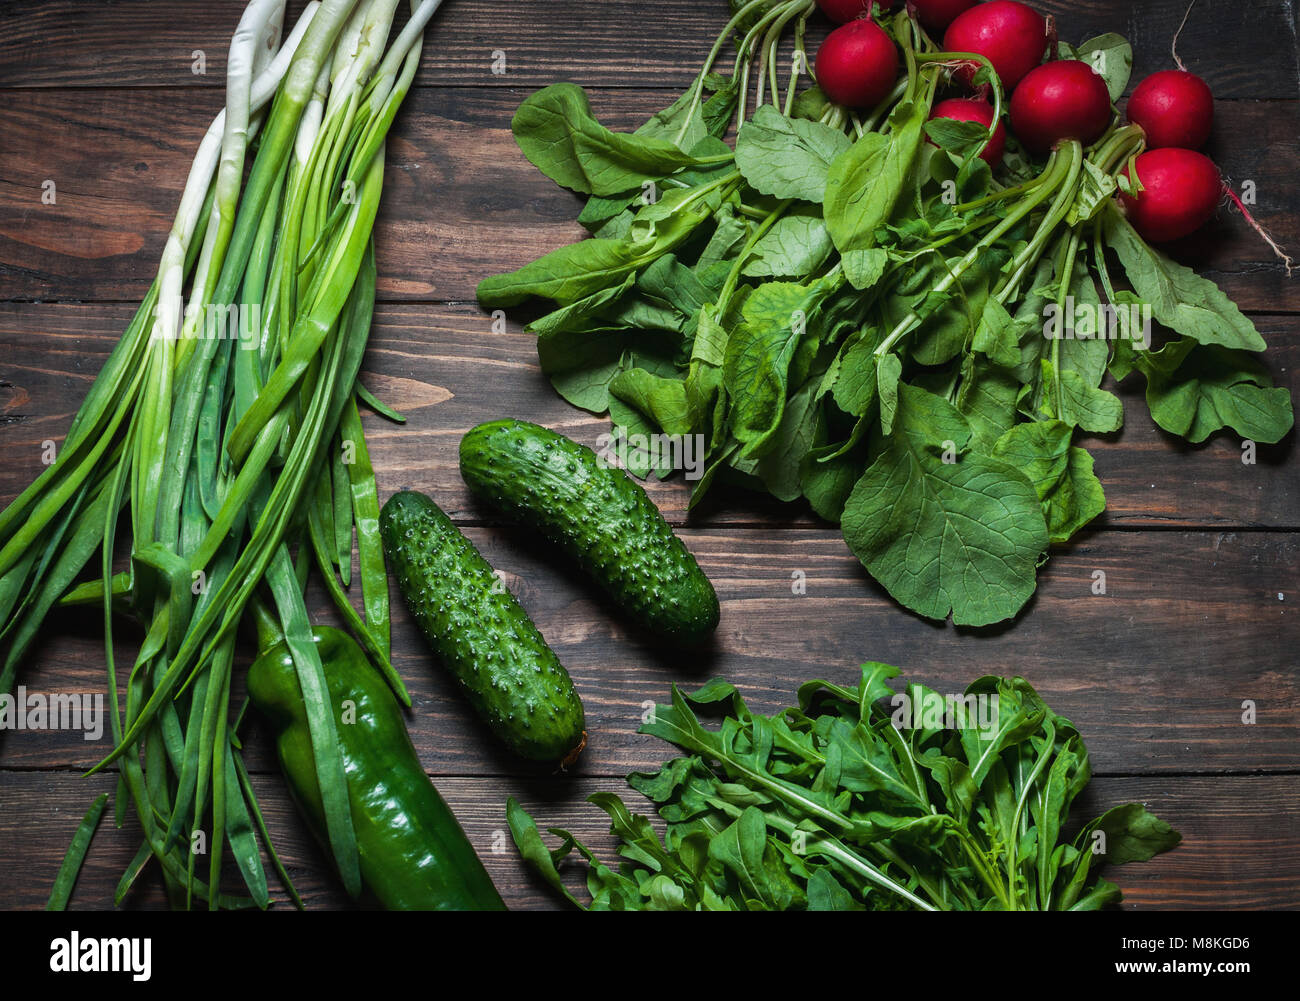 Frühling Hintergrund mit frischen saftigen Gemüse wie grüne Zwiebeln, Rucola, Gurken und Radieschen. Gesunde Ernährung Konzept. Veganes essen. Stockfoto